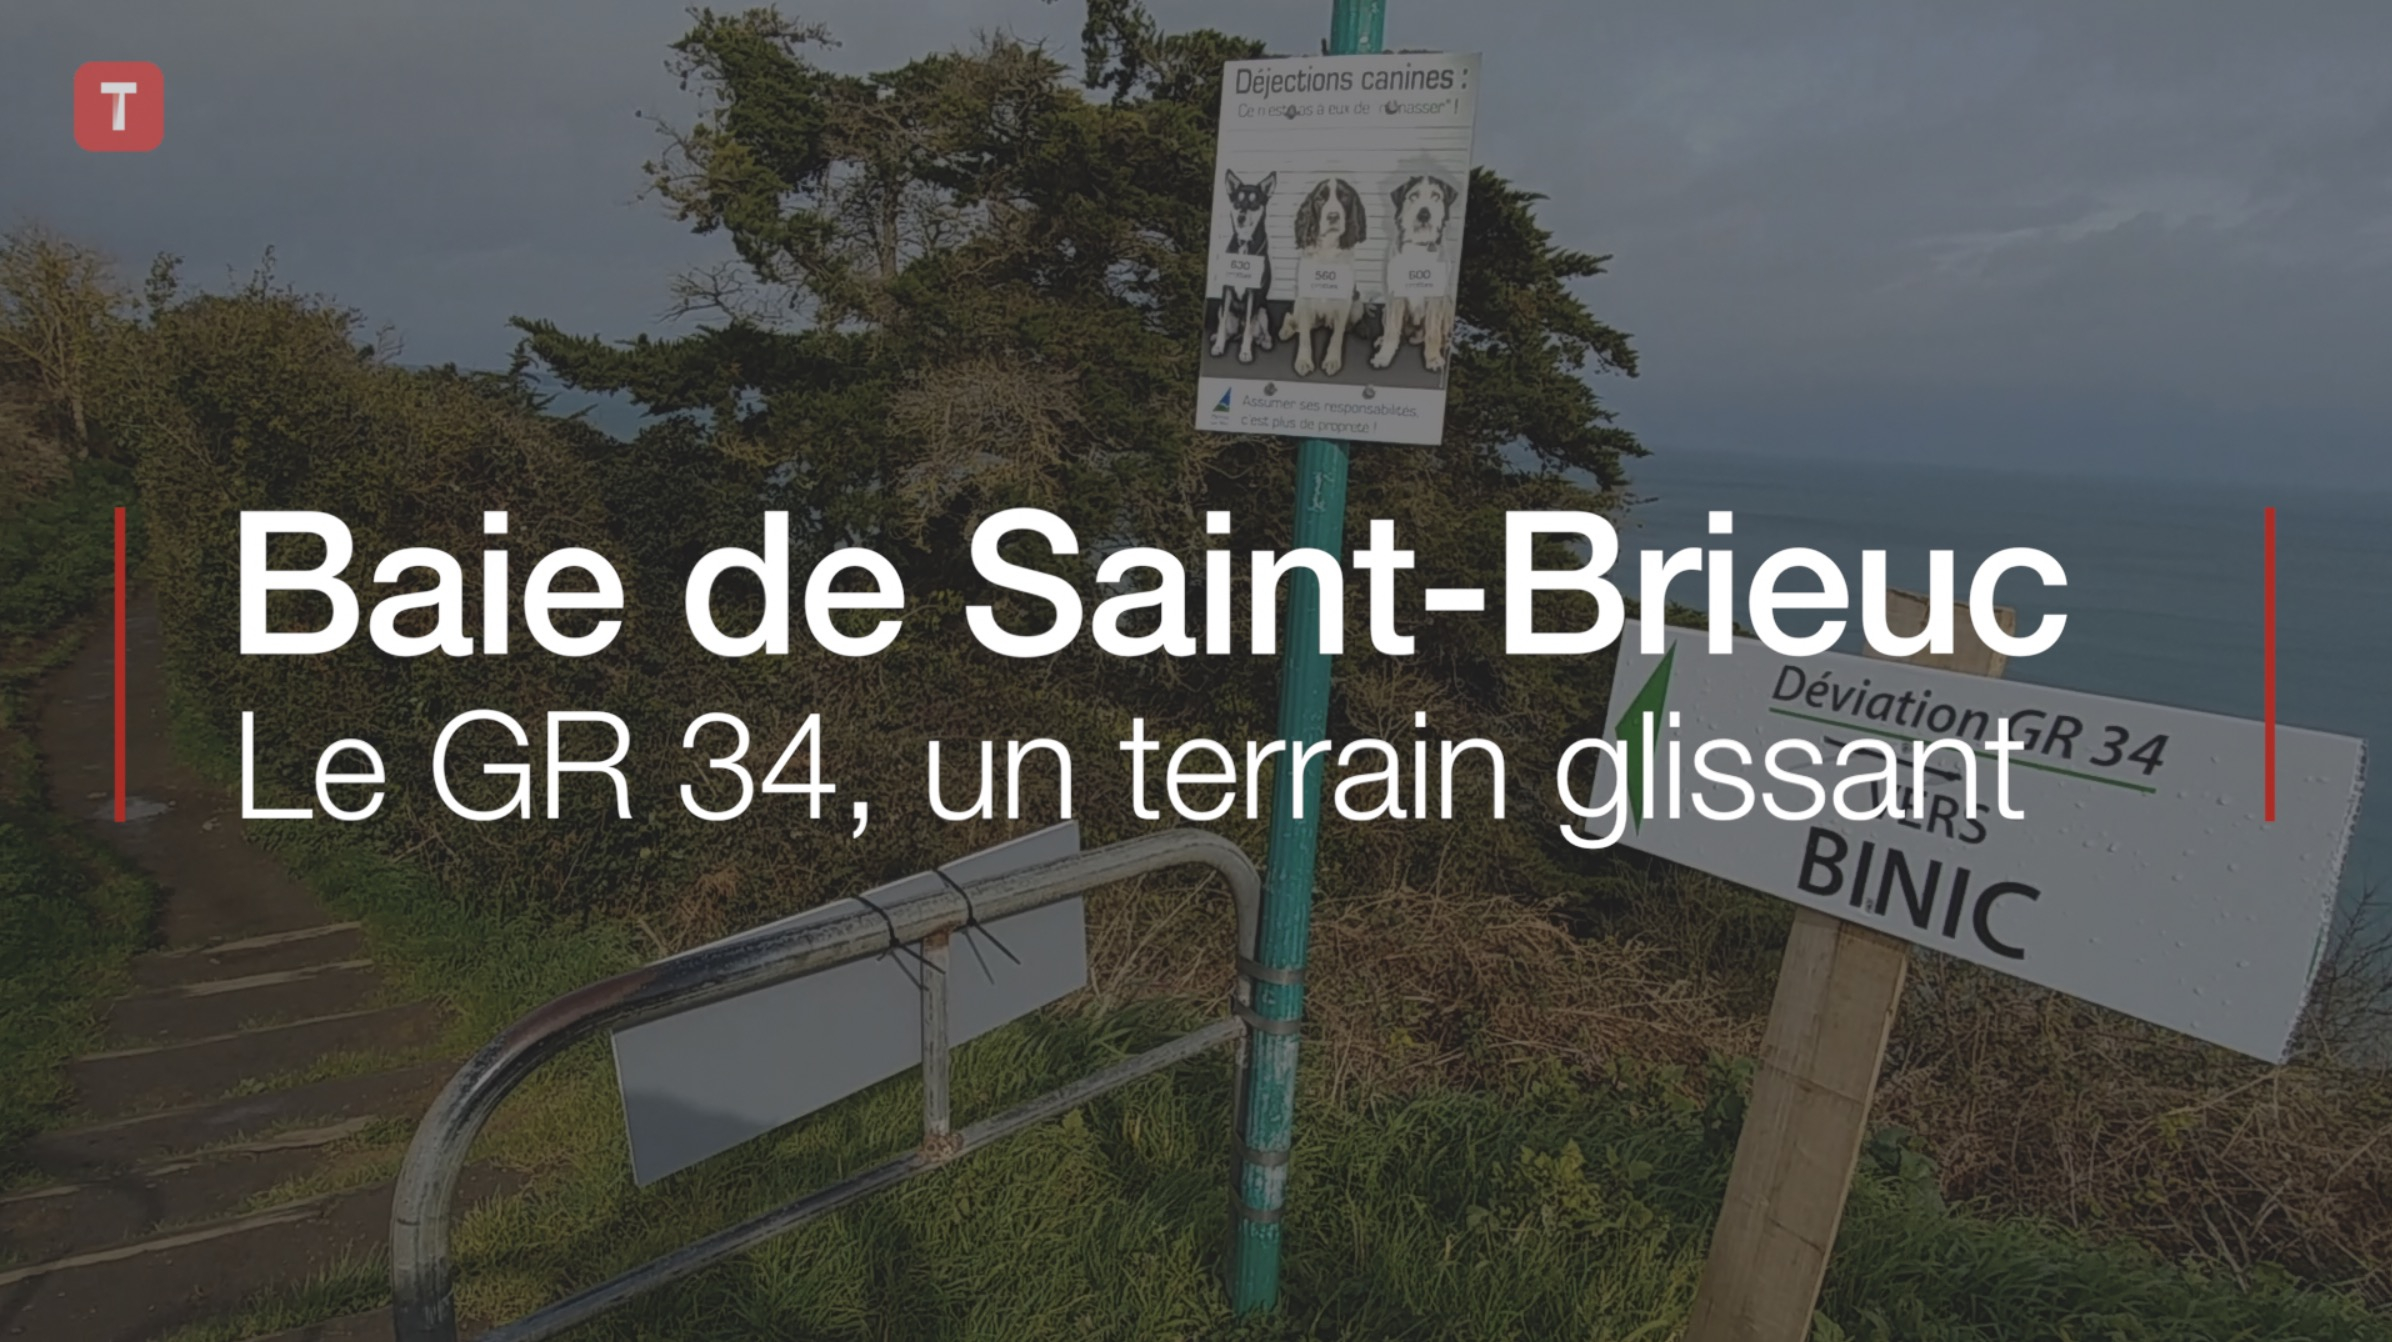 Baie de Saint-Brieuc. Le GR 34, un terrain glissant (Le Télégramme)